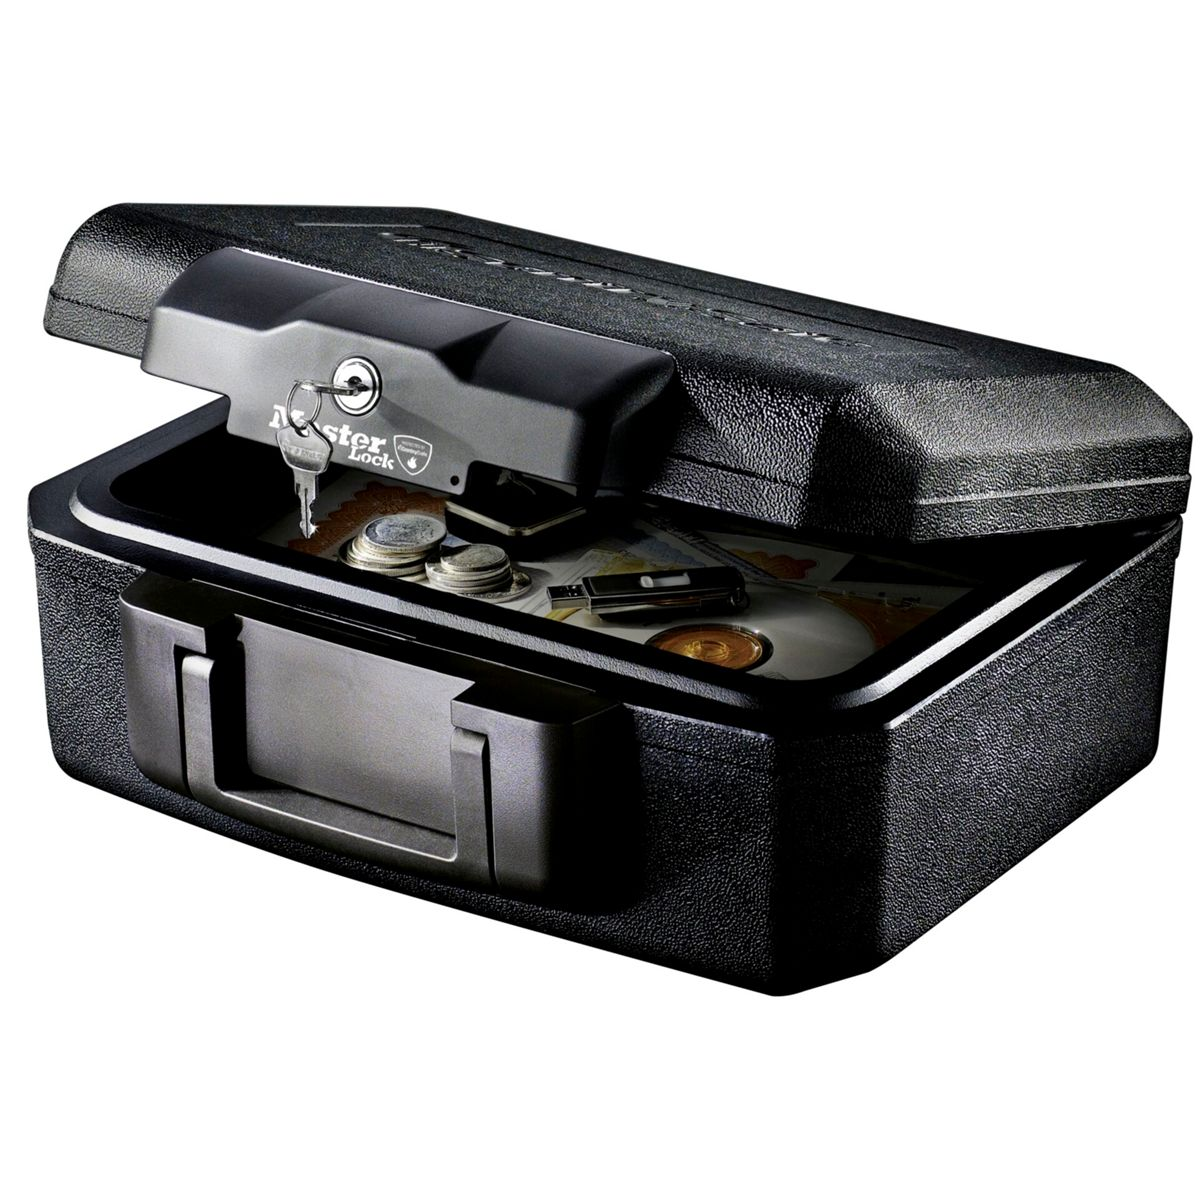 MASTERLOCK Master Sicherheitskassette Black Lock Safe L1200 Feuerbeständige